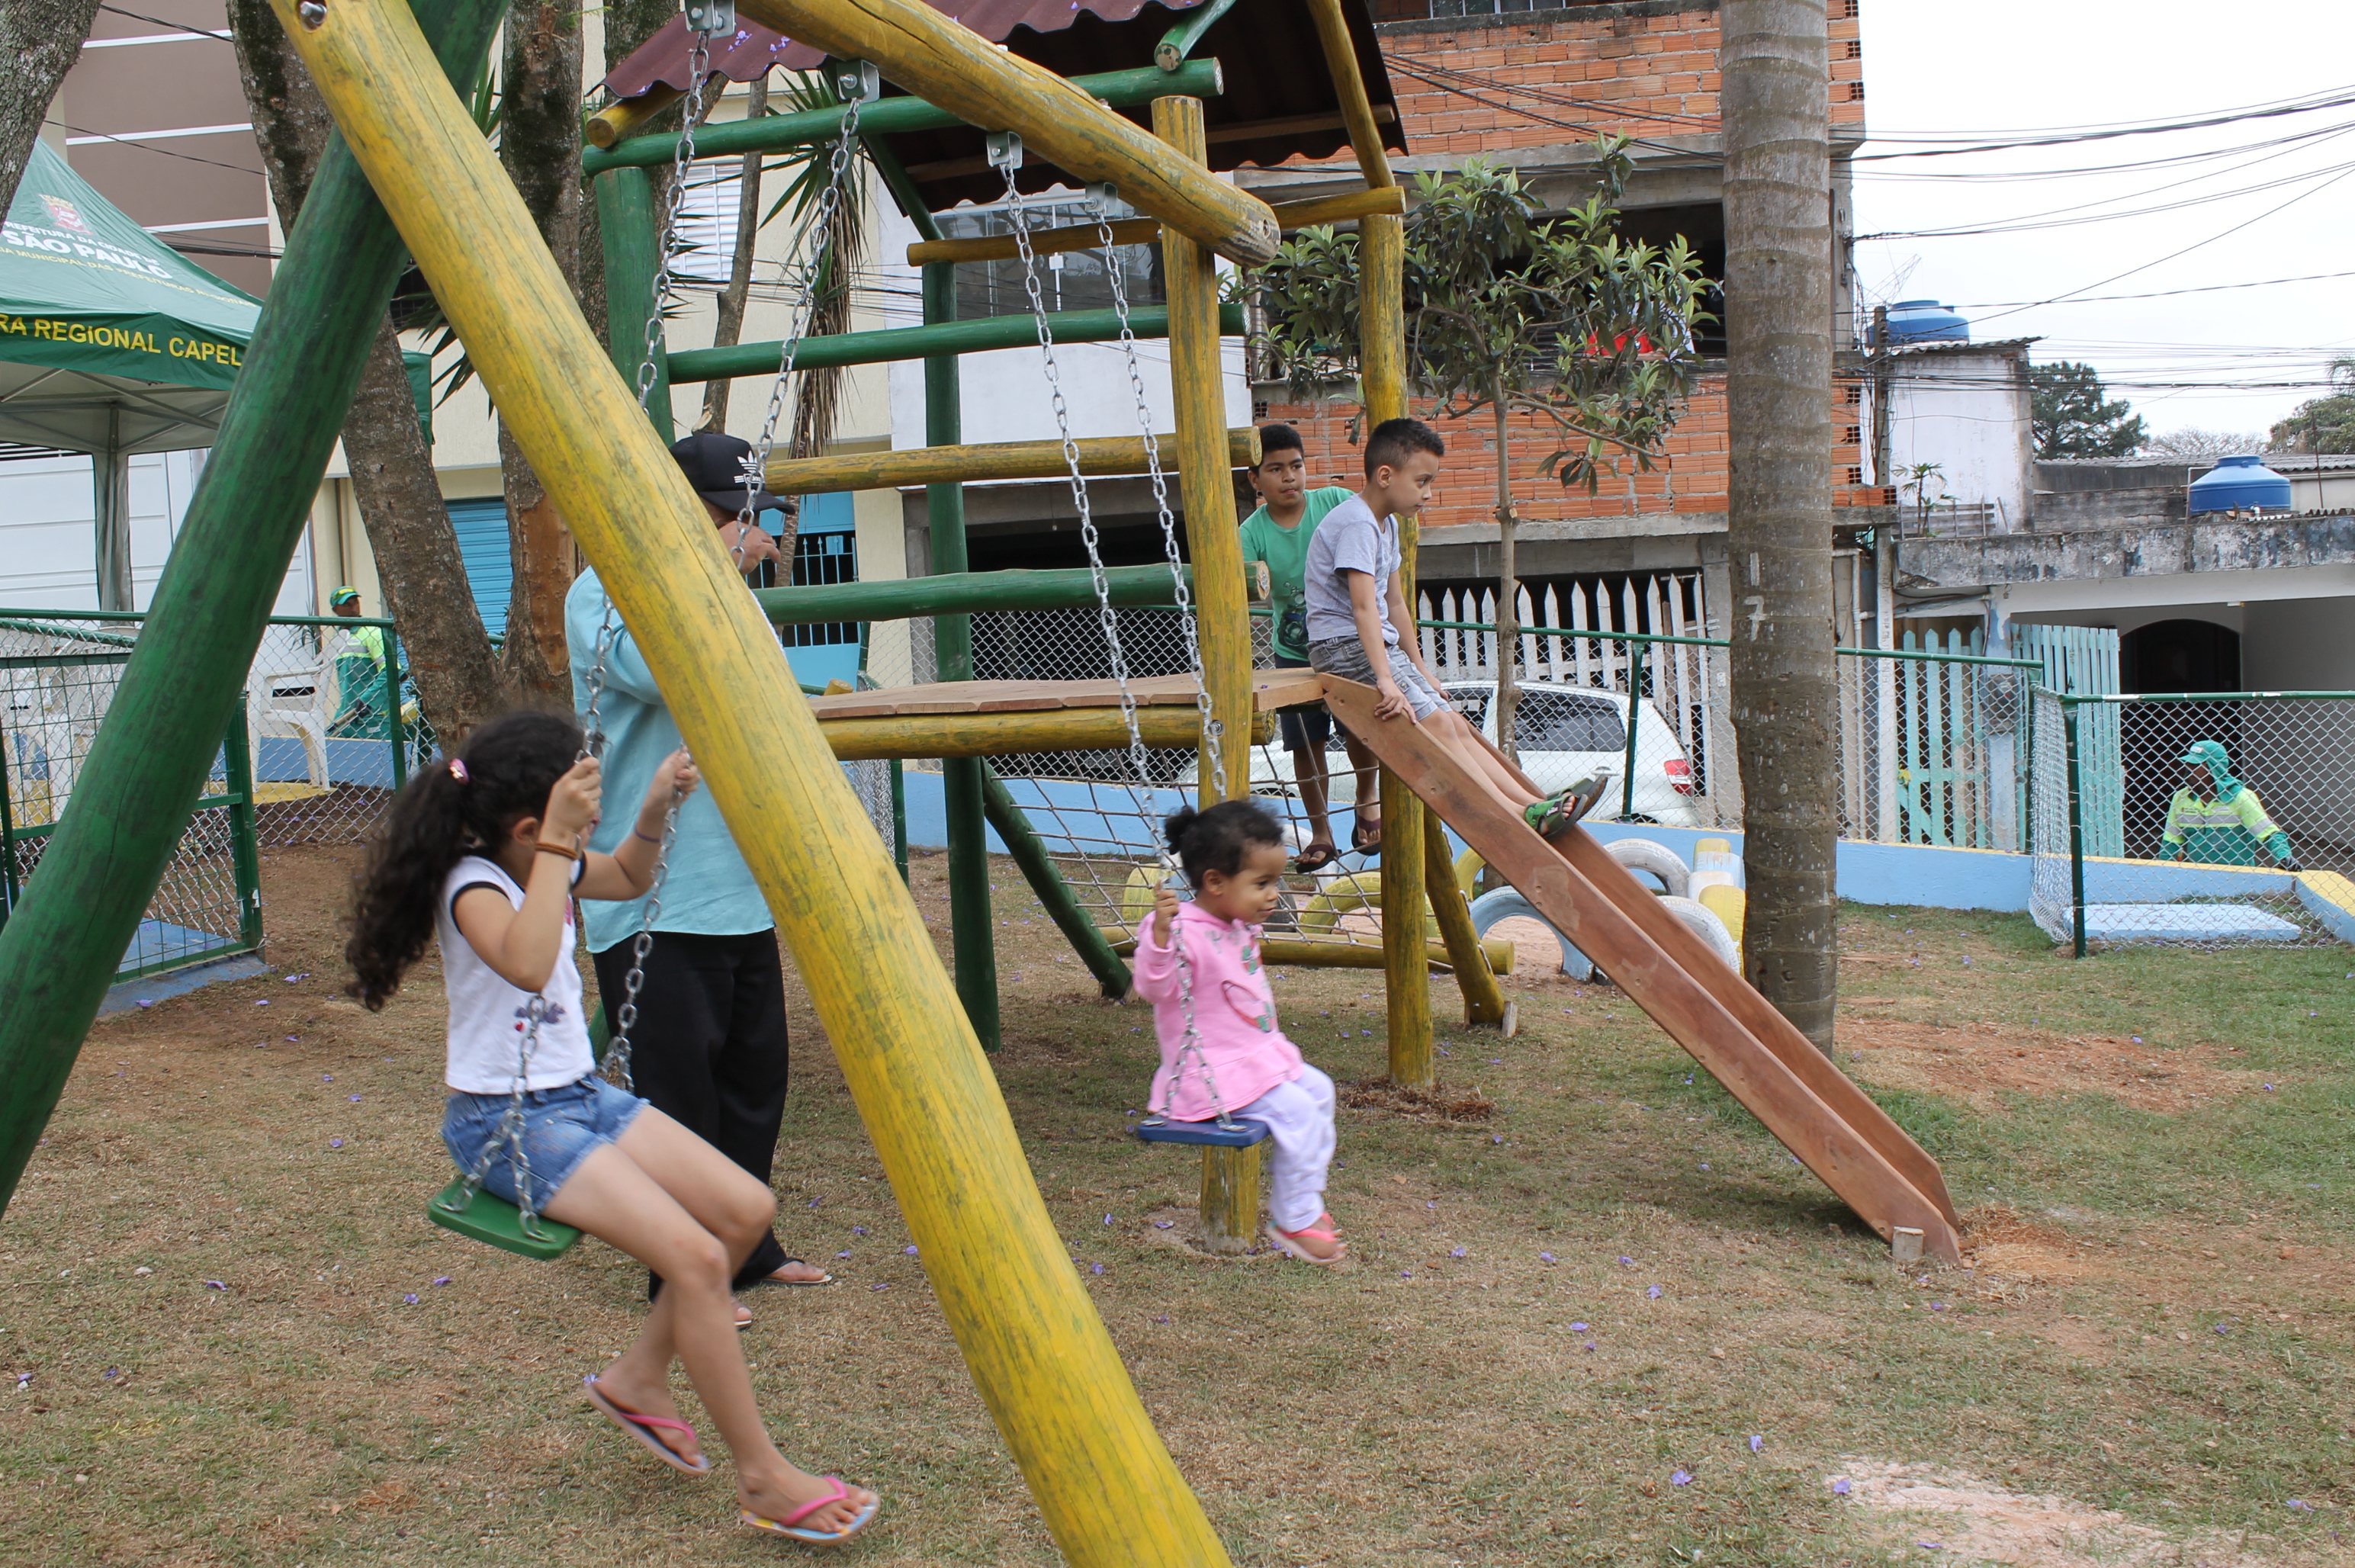 #PraCegoVer - Crianças brincam no balanço da praça. Um menino está no topo do escorregador. Ao fundo, as casas do local.